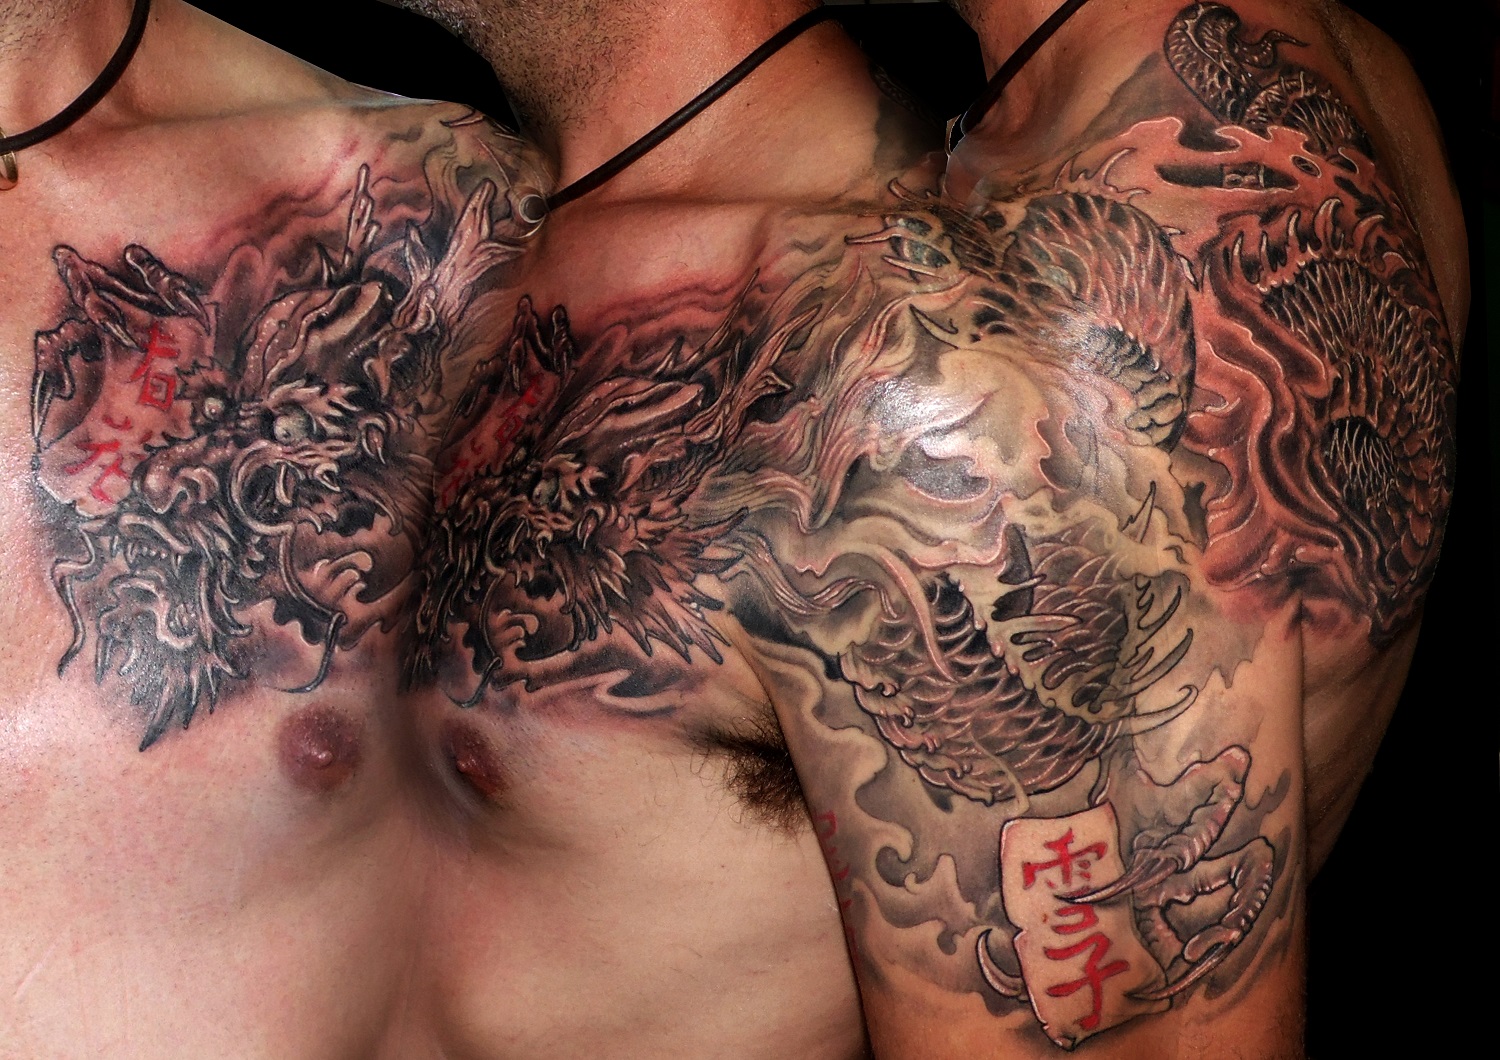 tatuaje imágenes tattoo dragón japonés hombro pecho espalda gris negro 13depicas trecedepicas jaca huesca